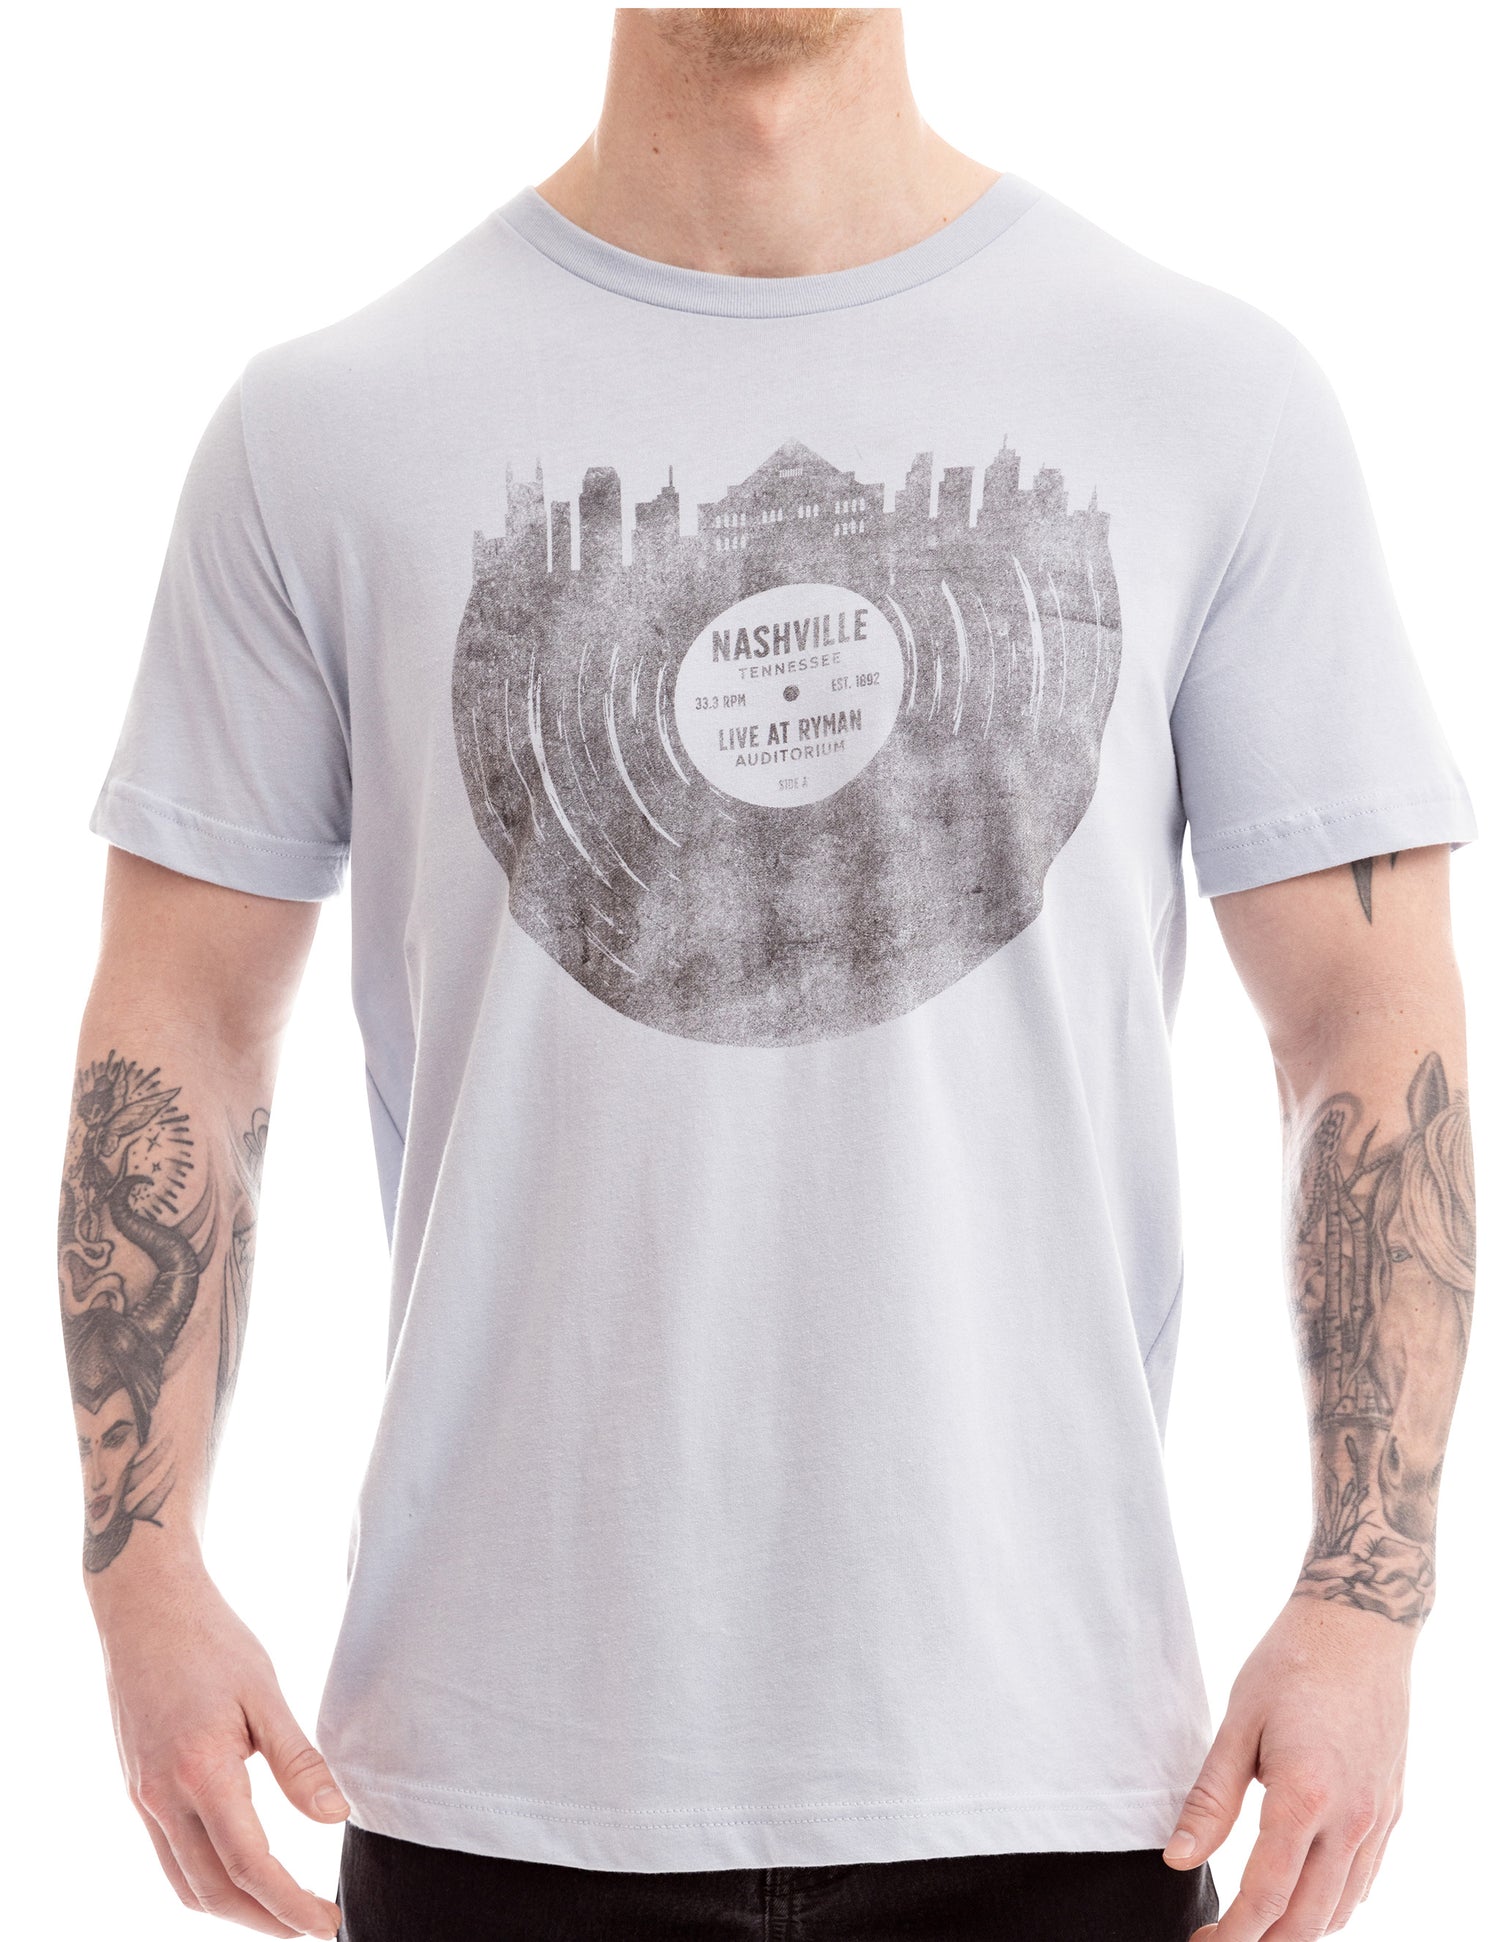 Ryman Nashville Skyline Record T-Shirt